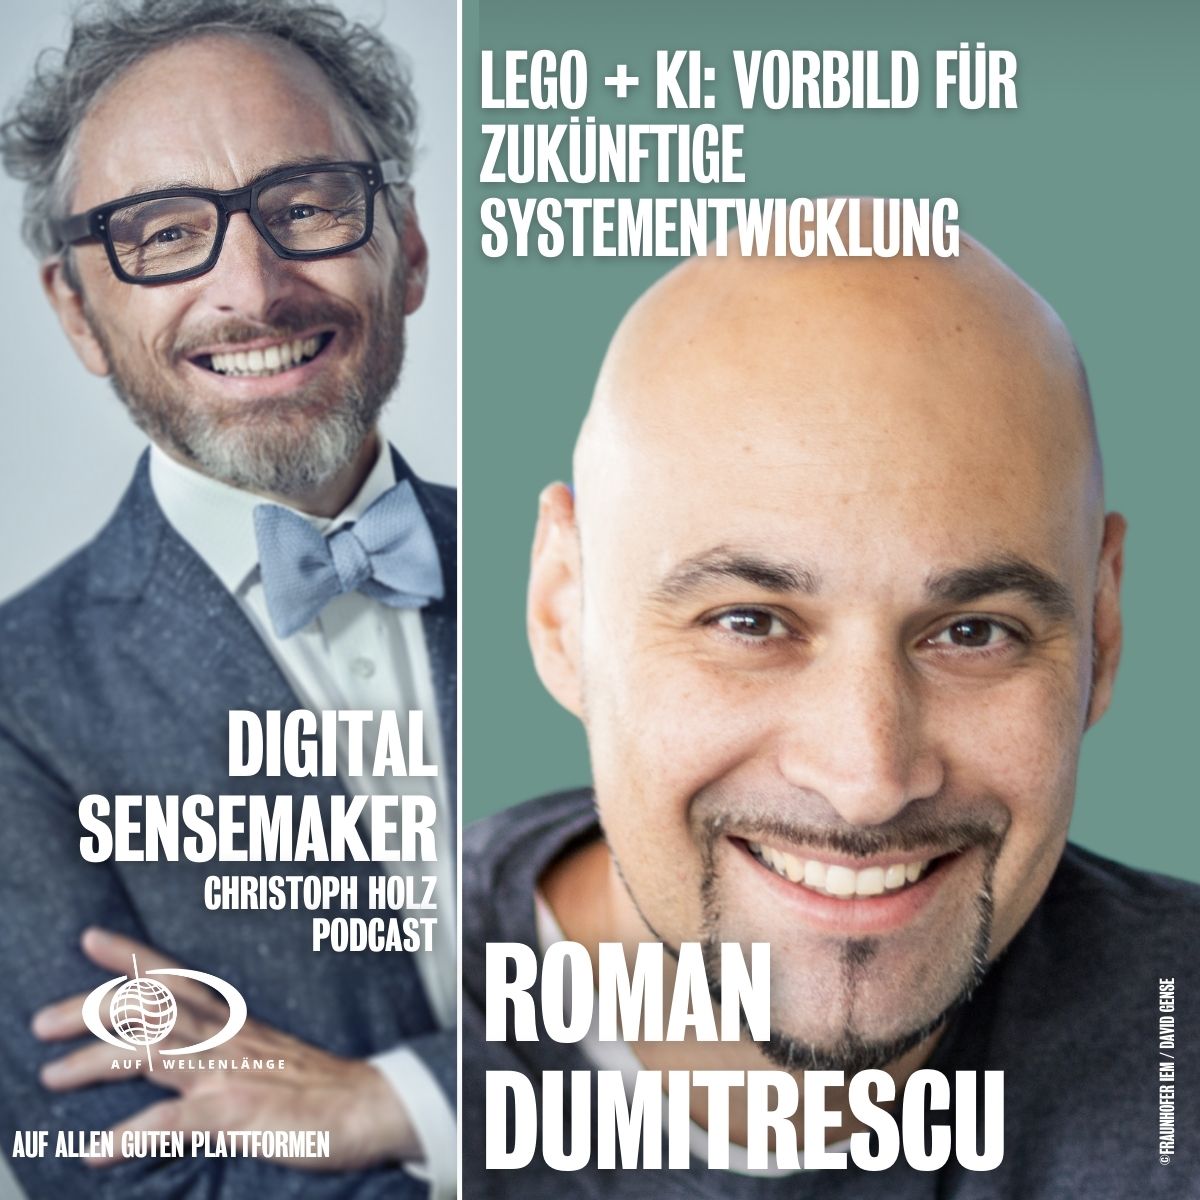 #131“LEGO + KI: Vorbild für zukünftige Systementwicklung” mit Roman Dumitrescu, Fraunhofer-Institut für Entwurfstechnik